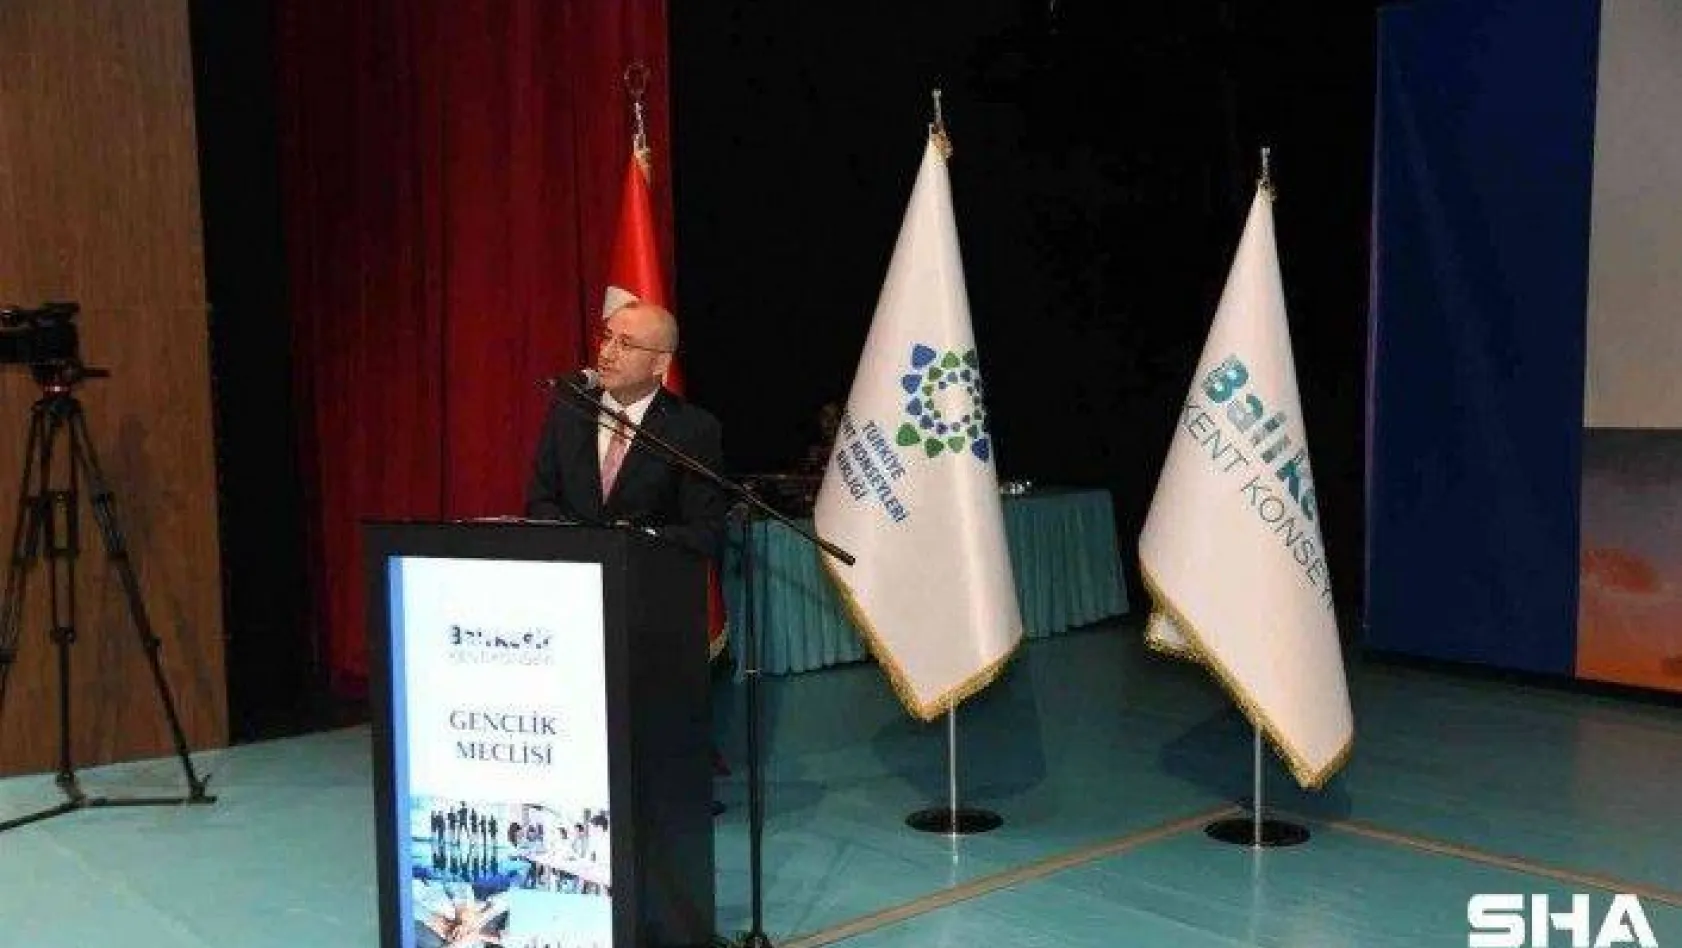 Balıkesir Gençlik Meclisi Başkanı Kerim Gülgönül